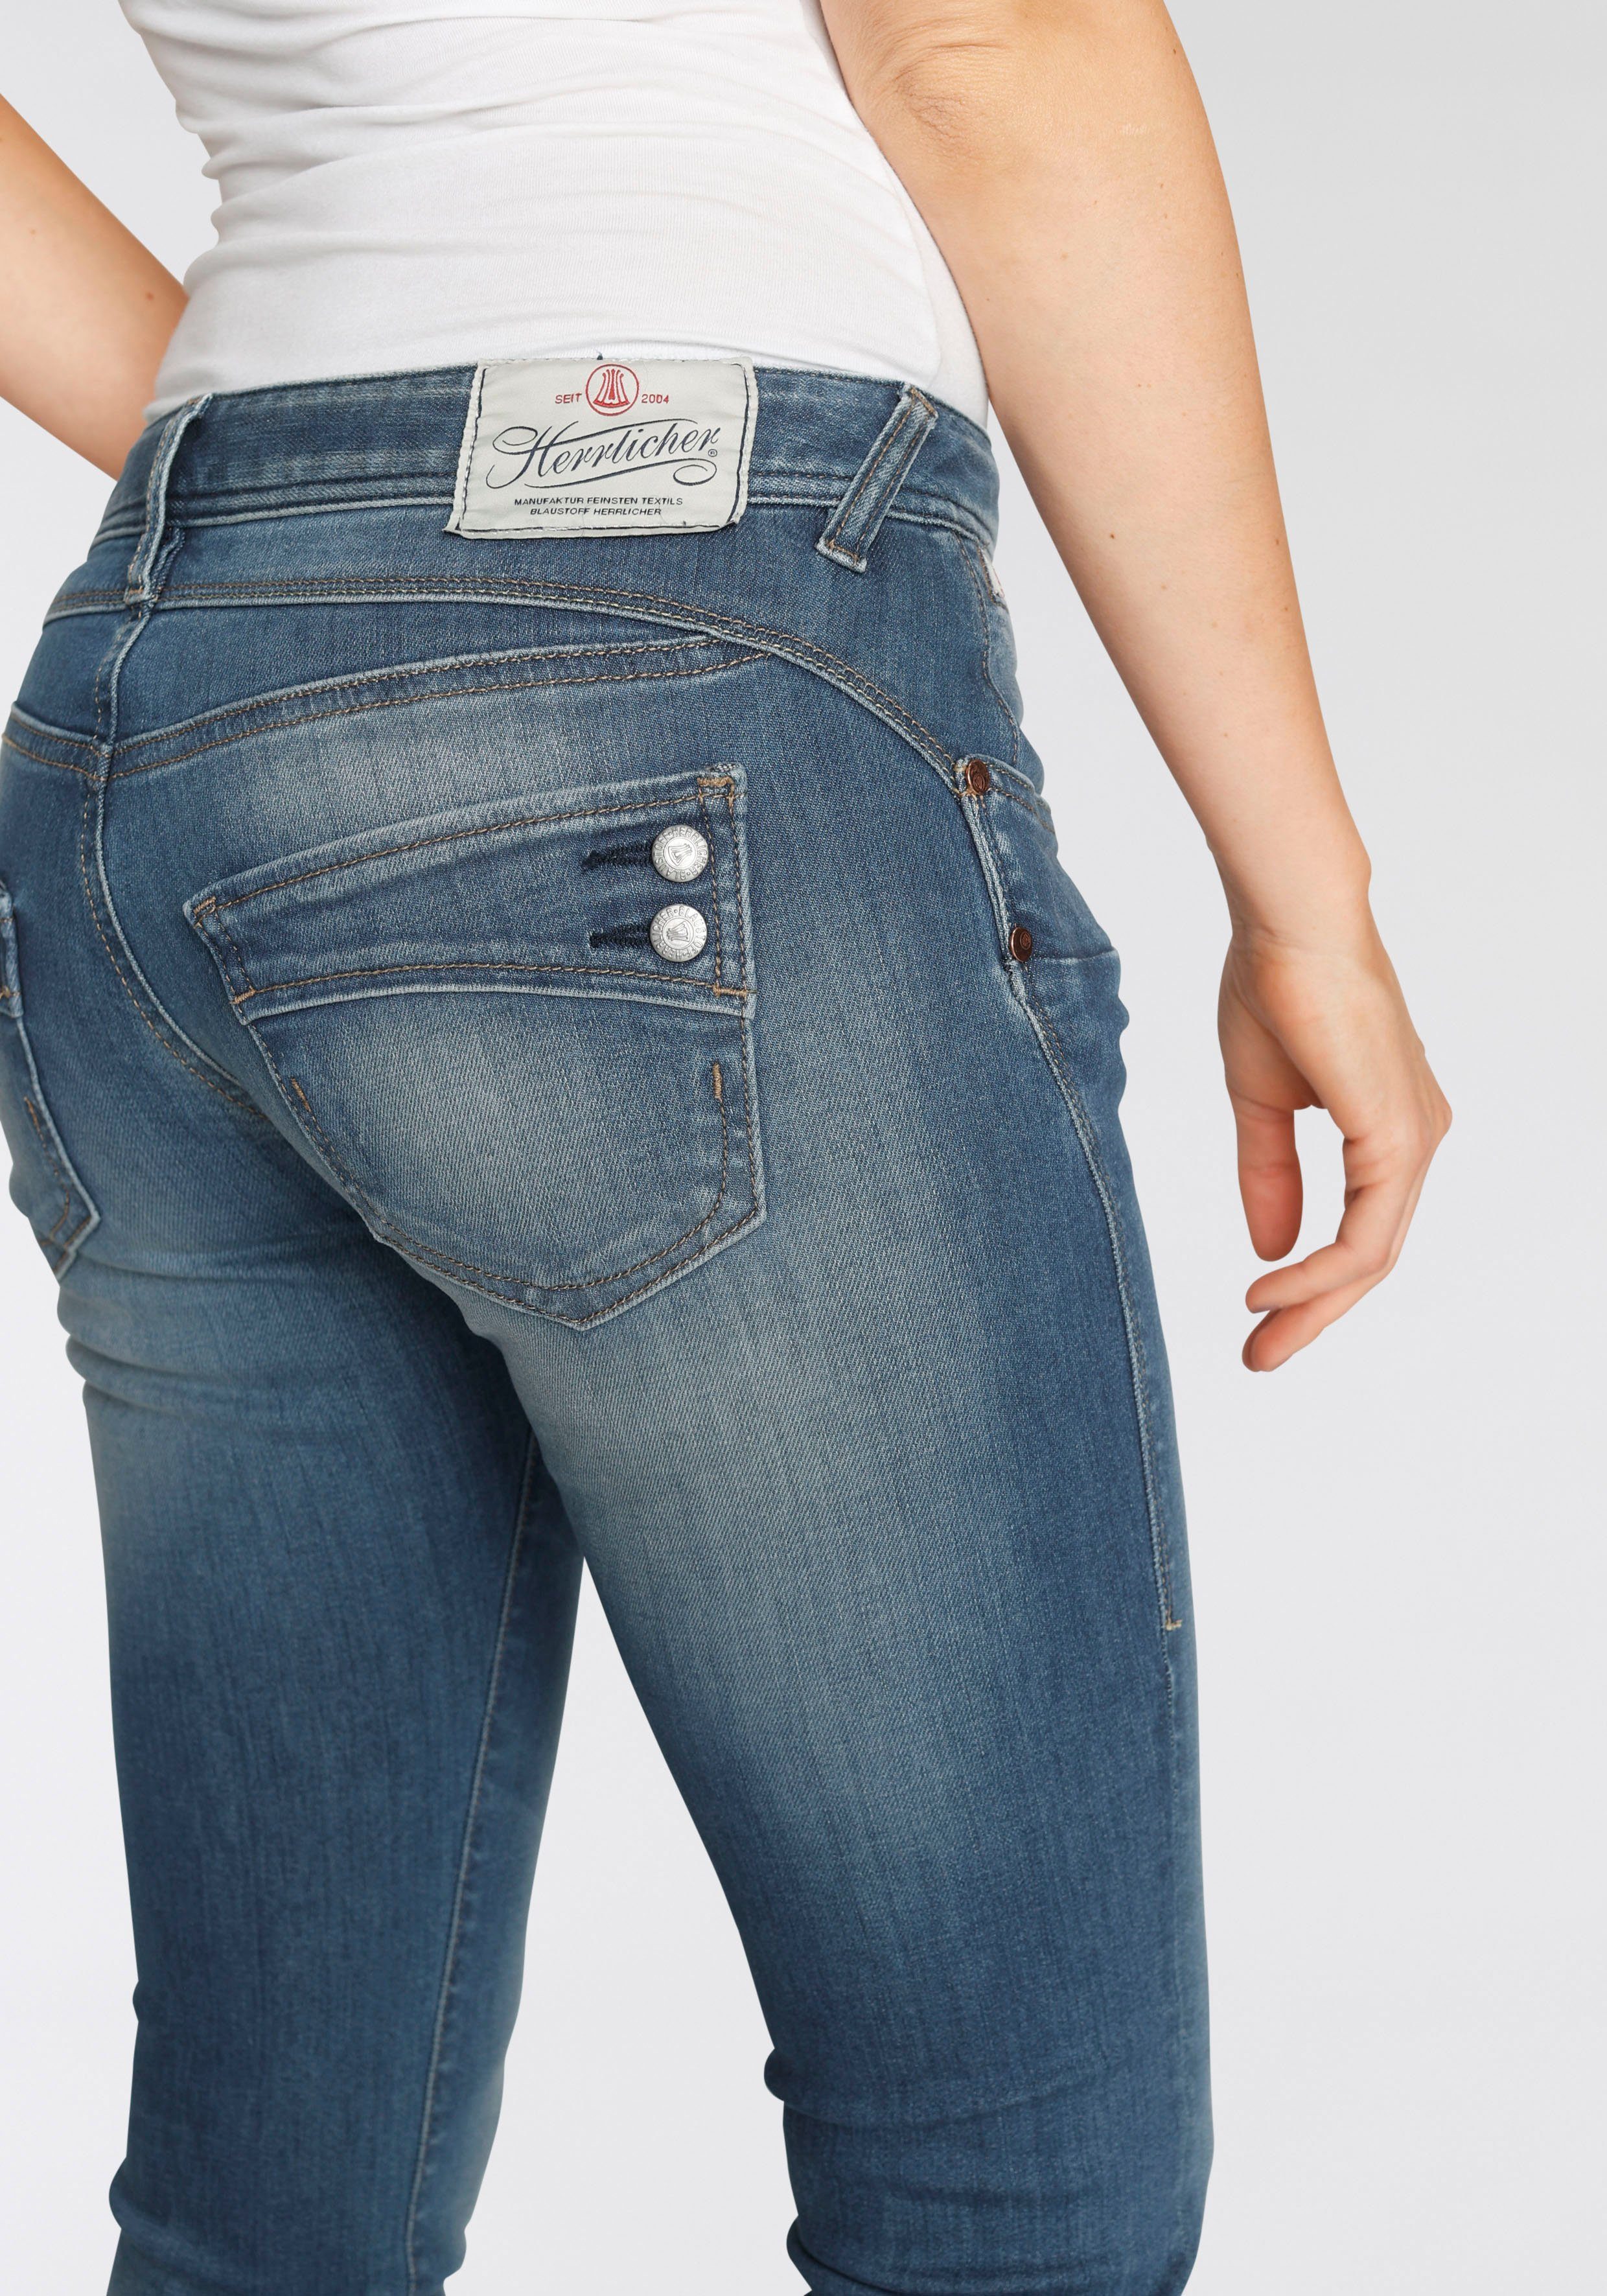 Kitotex umweltfreundlich Slim-fit-Jeans Technology ORGANIC PIPER dank SLIM Herrlicher